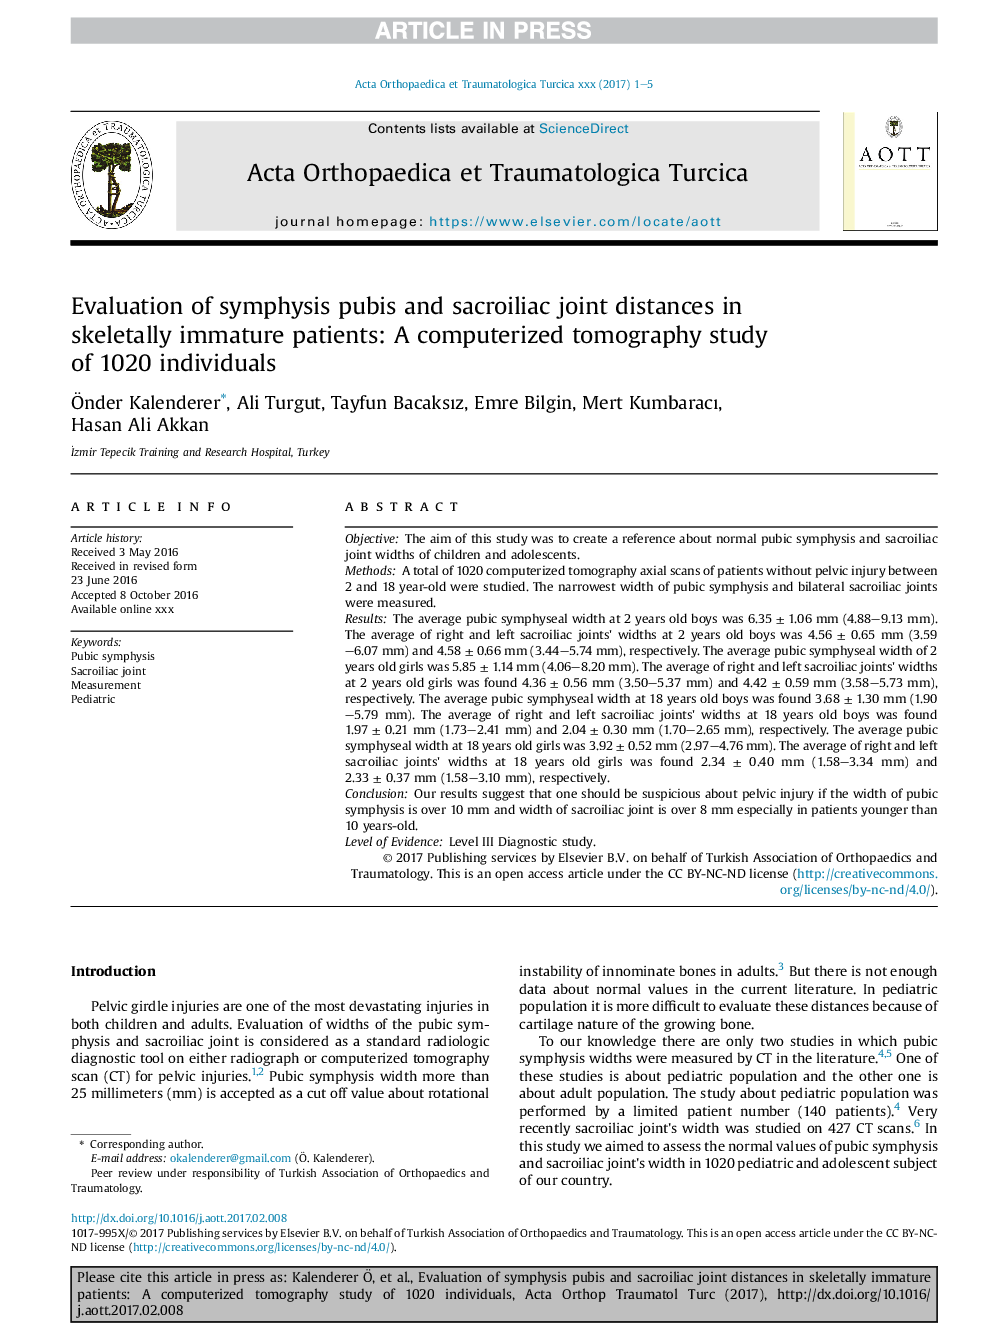 بررسی فاصله مفصلی سمفیز پوبیس و ساکرویلیاک در بیماران نابالغ اسکلتی: یک مطالعه کامپیوتری توموگرافی 1020 فرد 